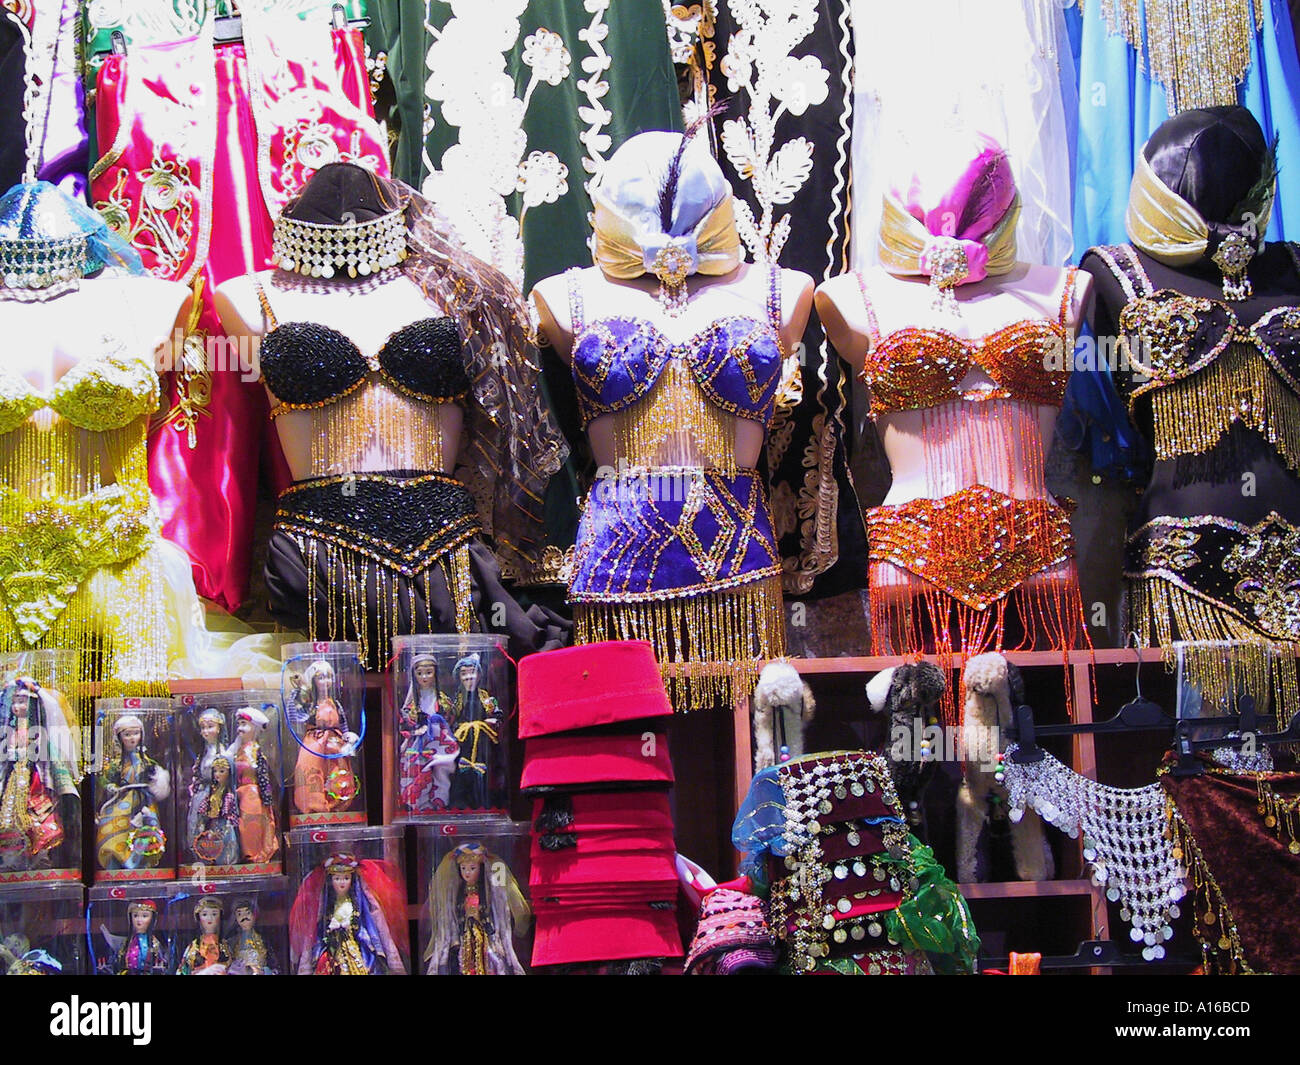 Danseuse du Ventre vêtements Fès et d'autres souvenirs dans le Grand Bazar  Istanbul - Capitale Européenne de la Culture 2010 - Turquie Photo Stock -  Alamy